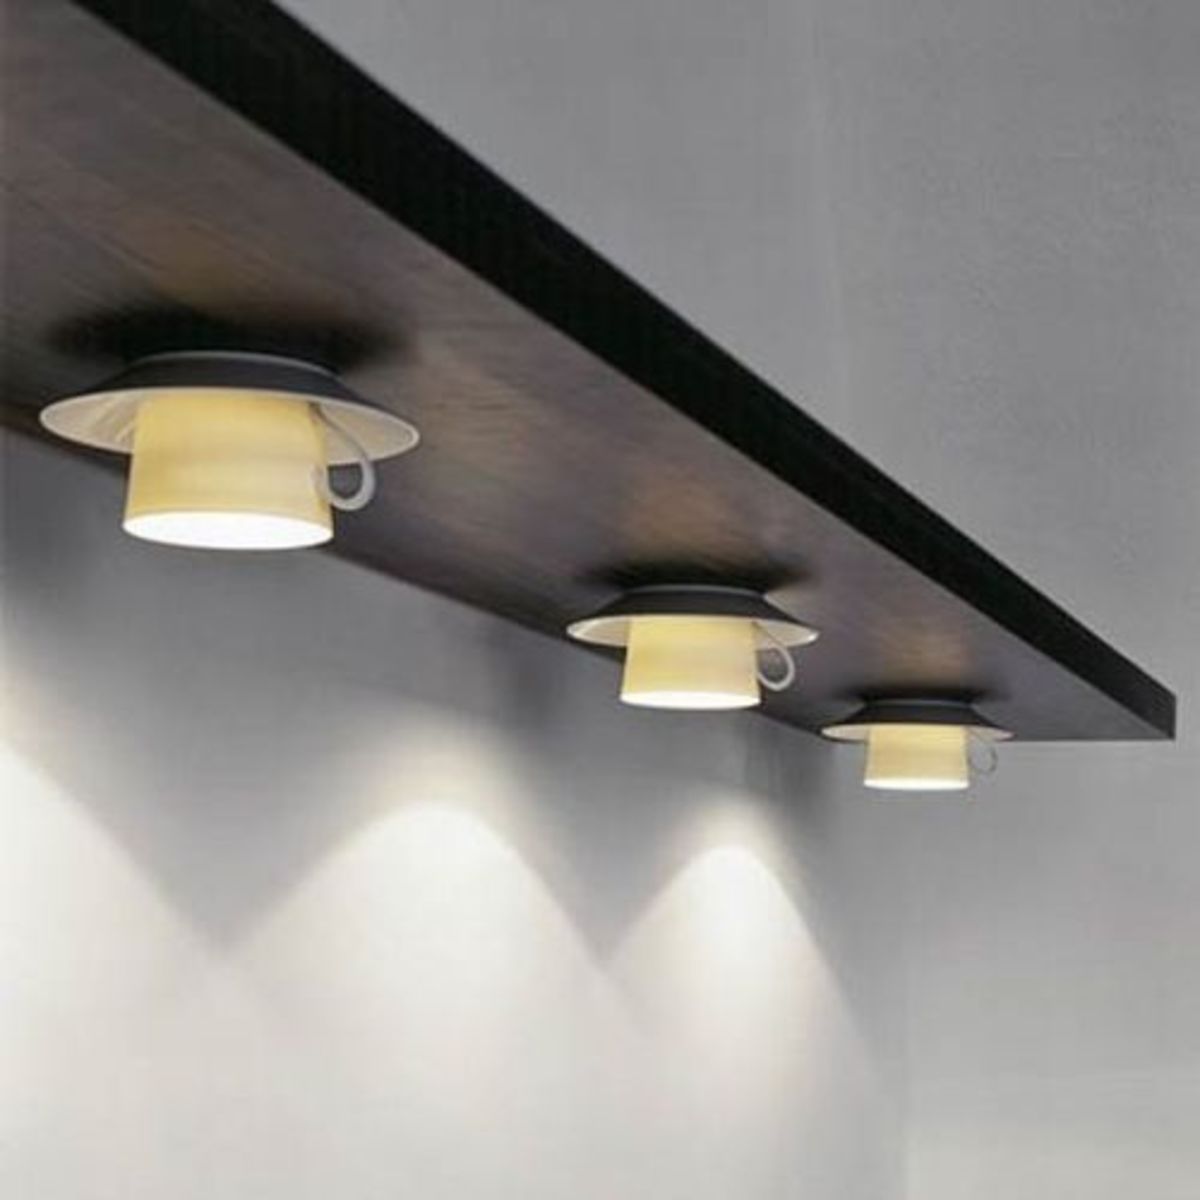 unique-lamps-as-an-interior-element